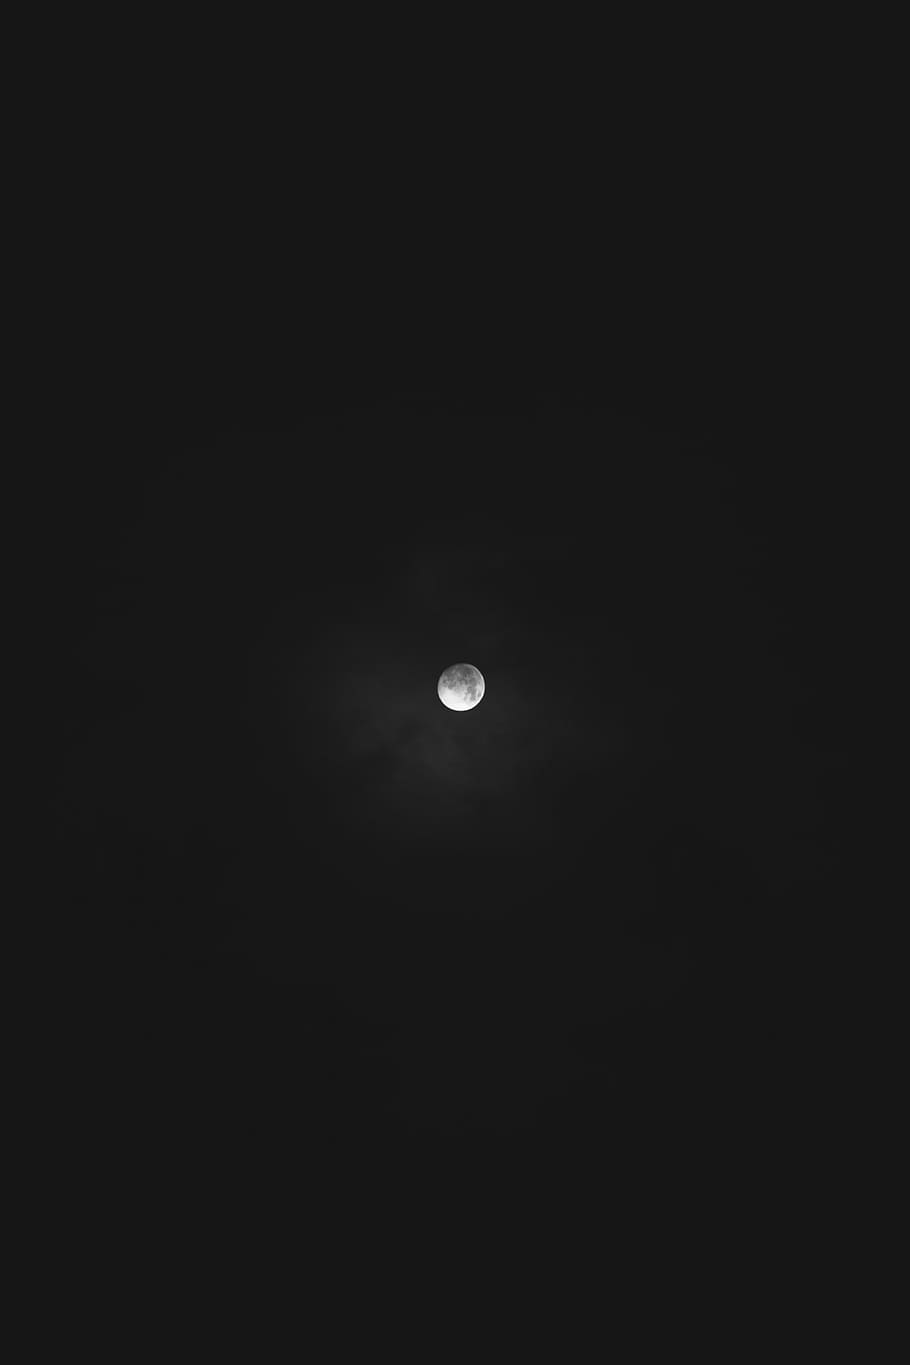 baixo, foto do ângulo, lua, completo, escuro, noite, céu, astronomia, espaço de cópia, ninguém